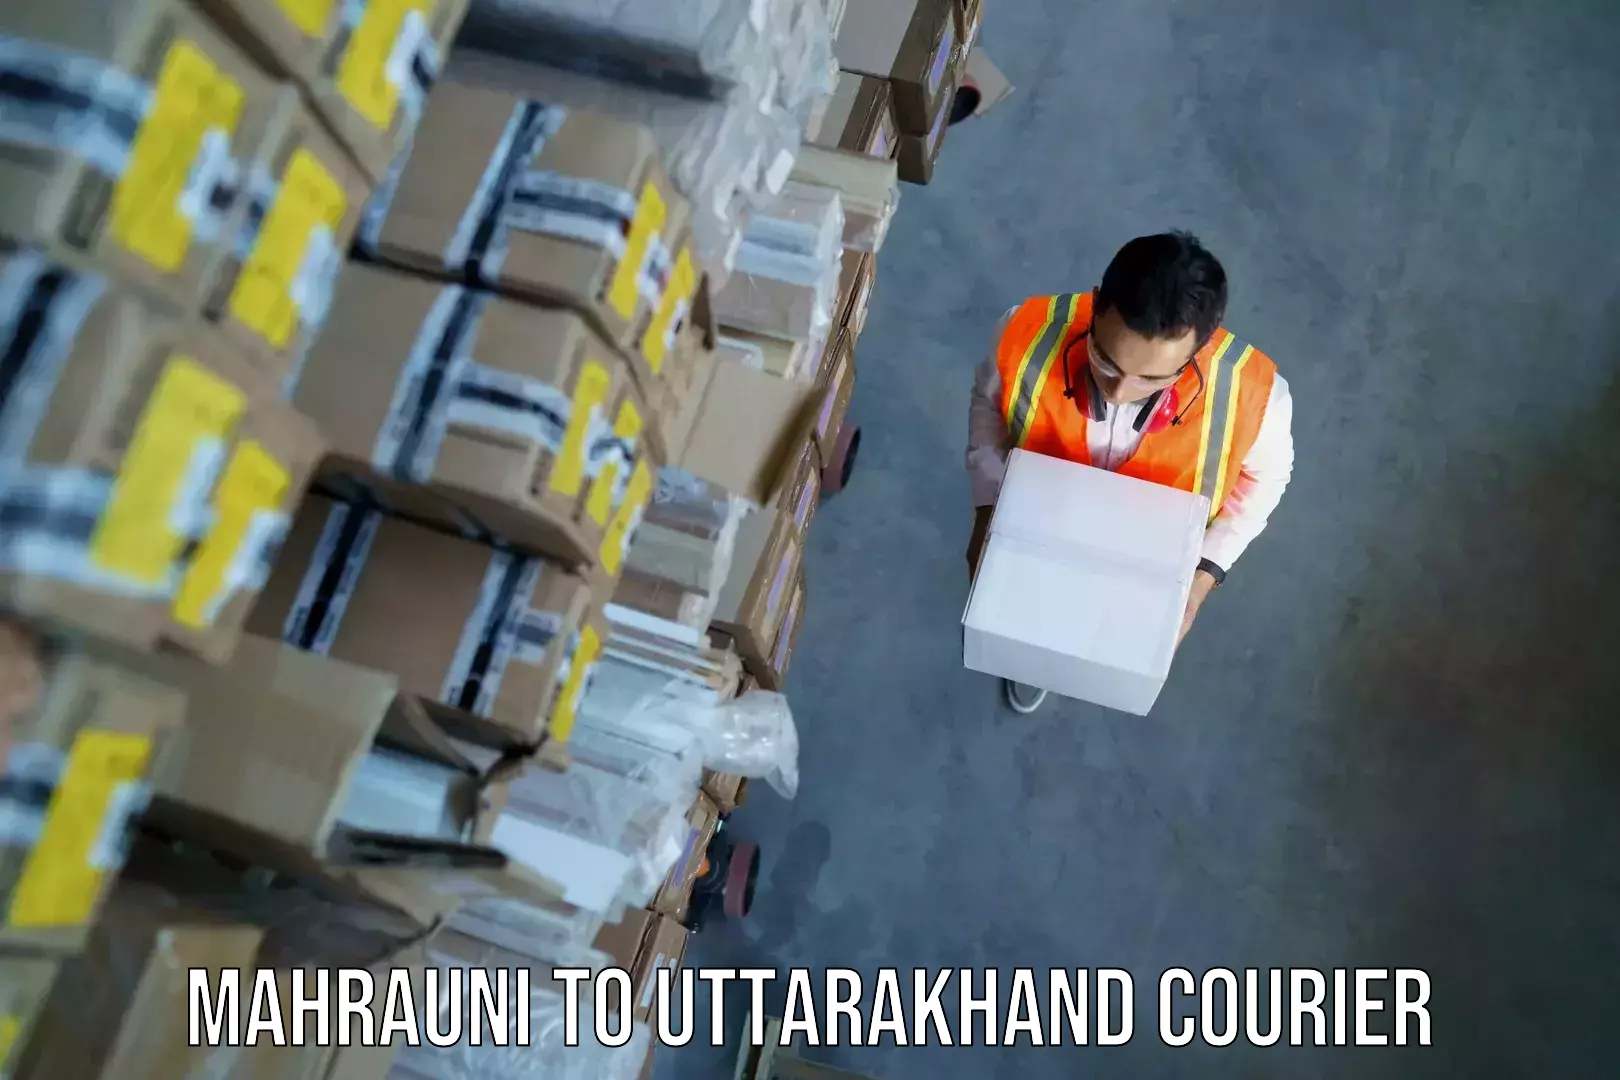 Luggage shipment specialists Mahrauni to Paithani